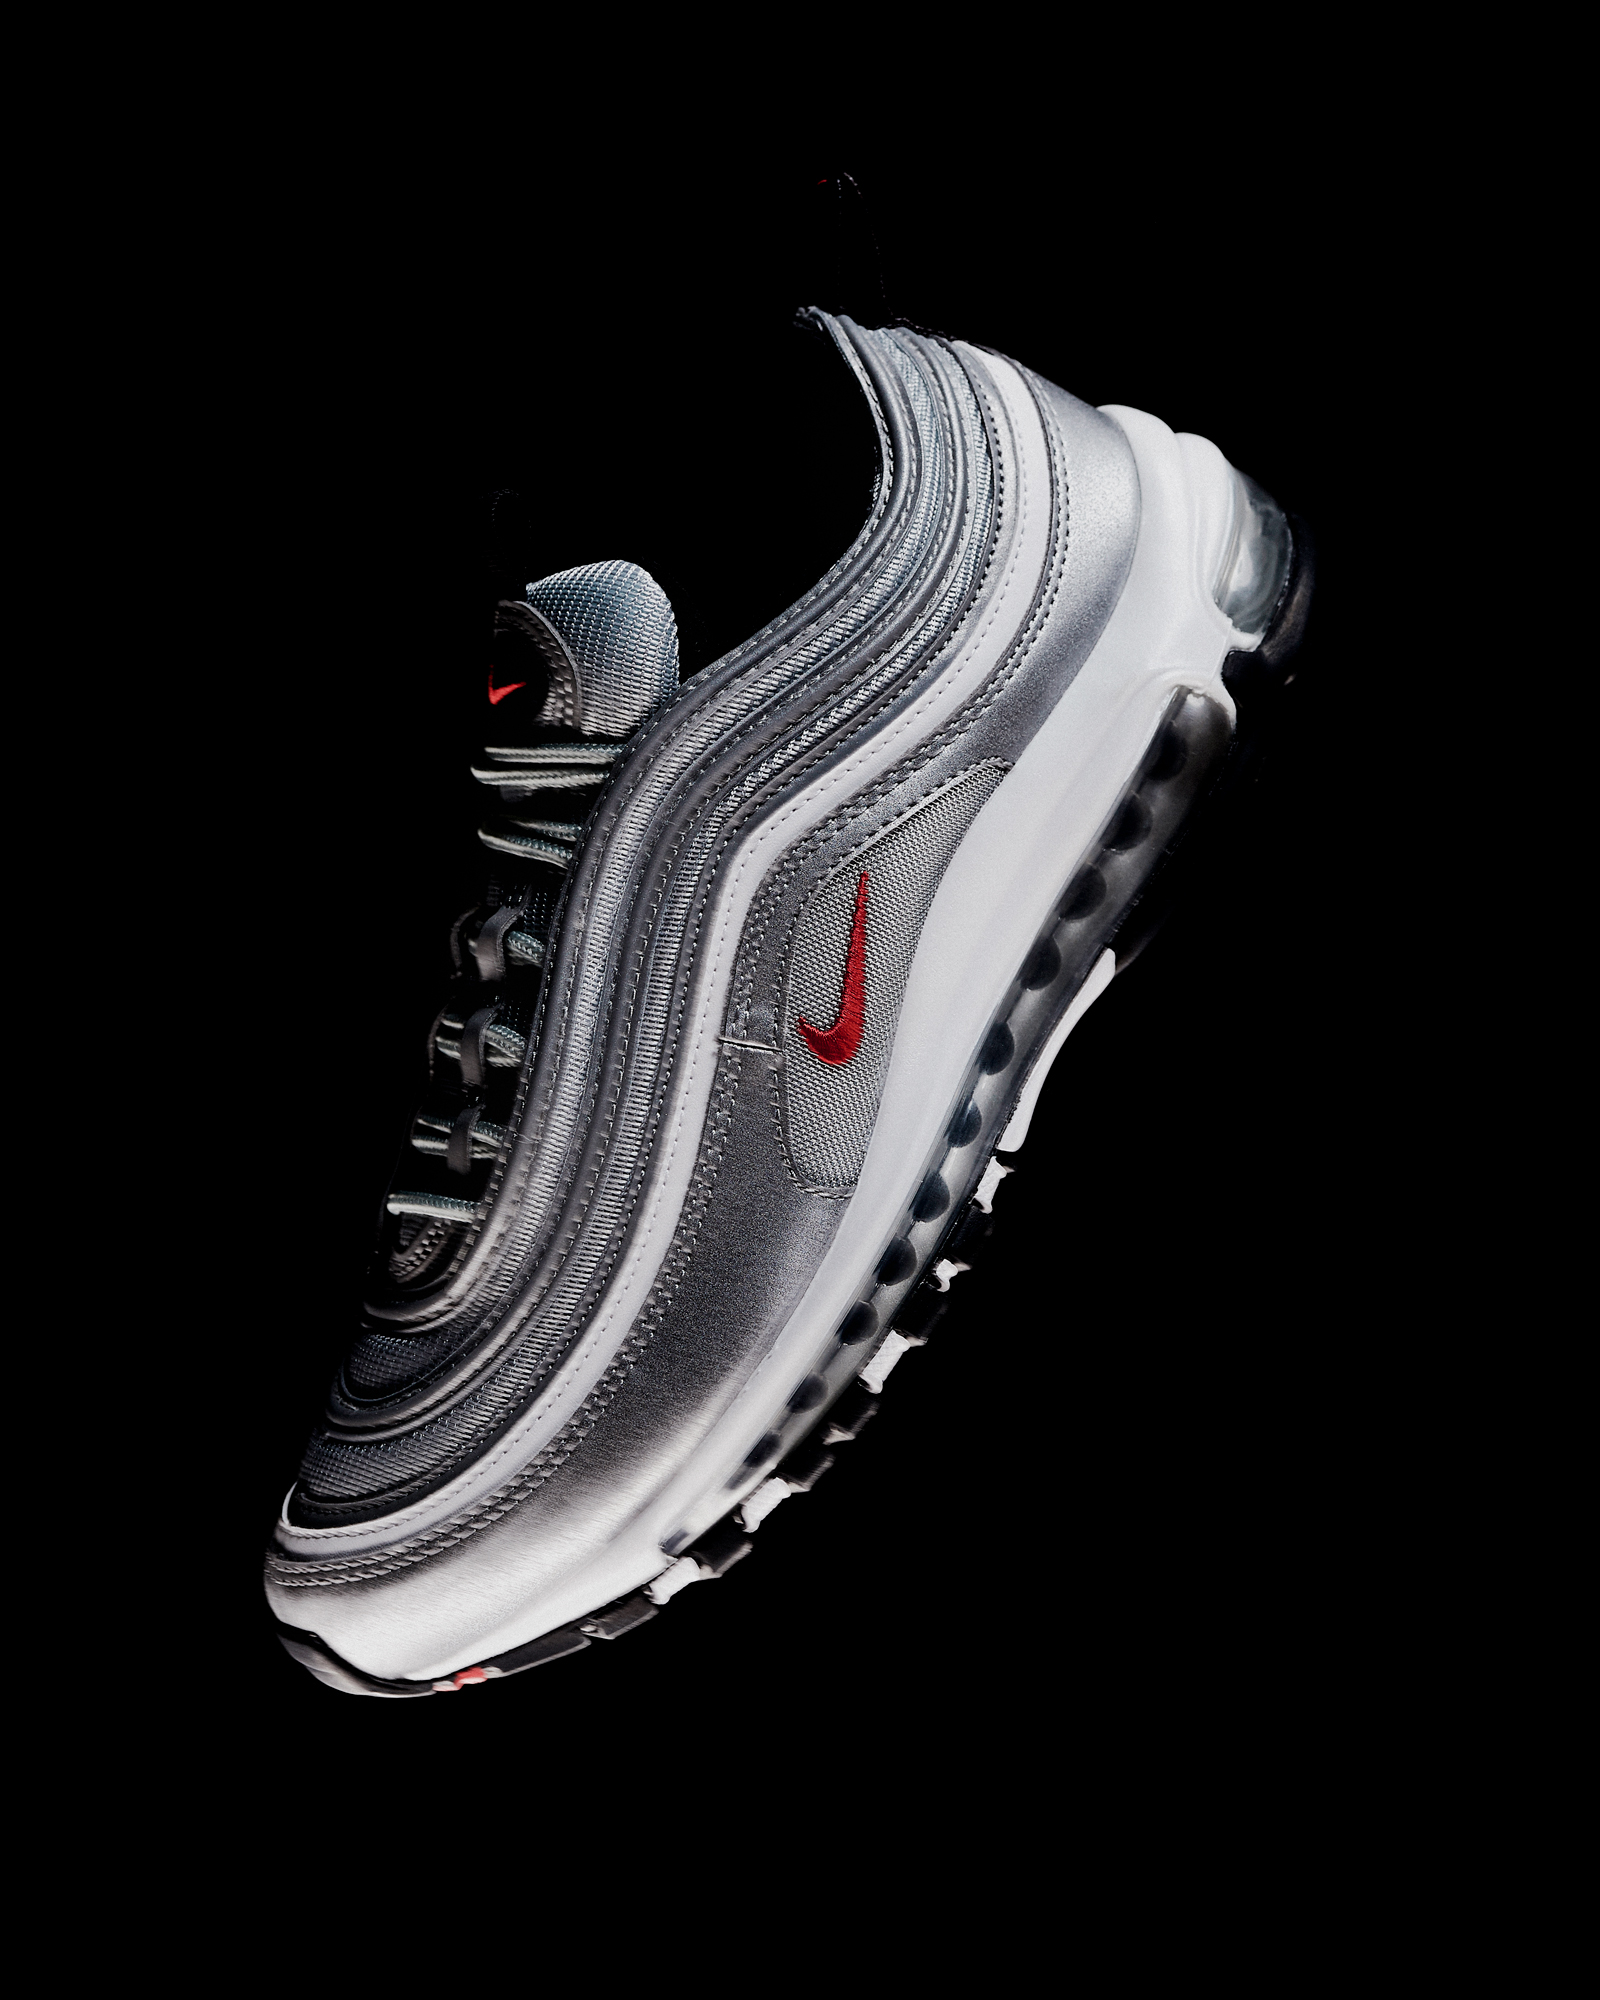 Vervelend botsing Haalbaarheid The return of Nike Air Max 97 OG "Silver" aka "Silver Bullet" -  Sneakersnstuff (SNS) 